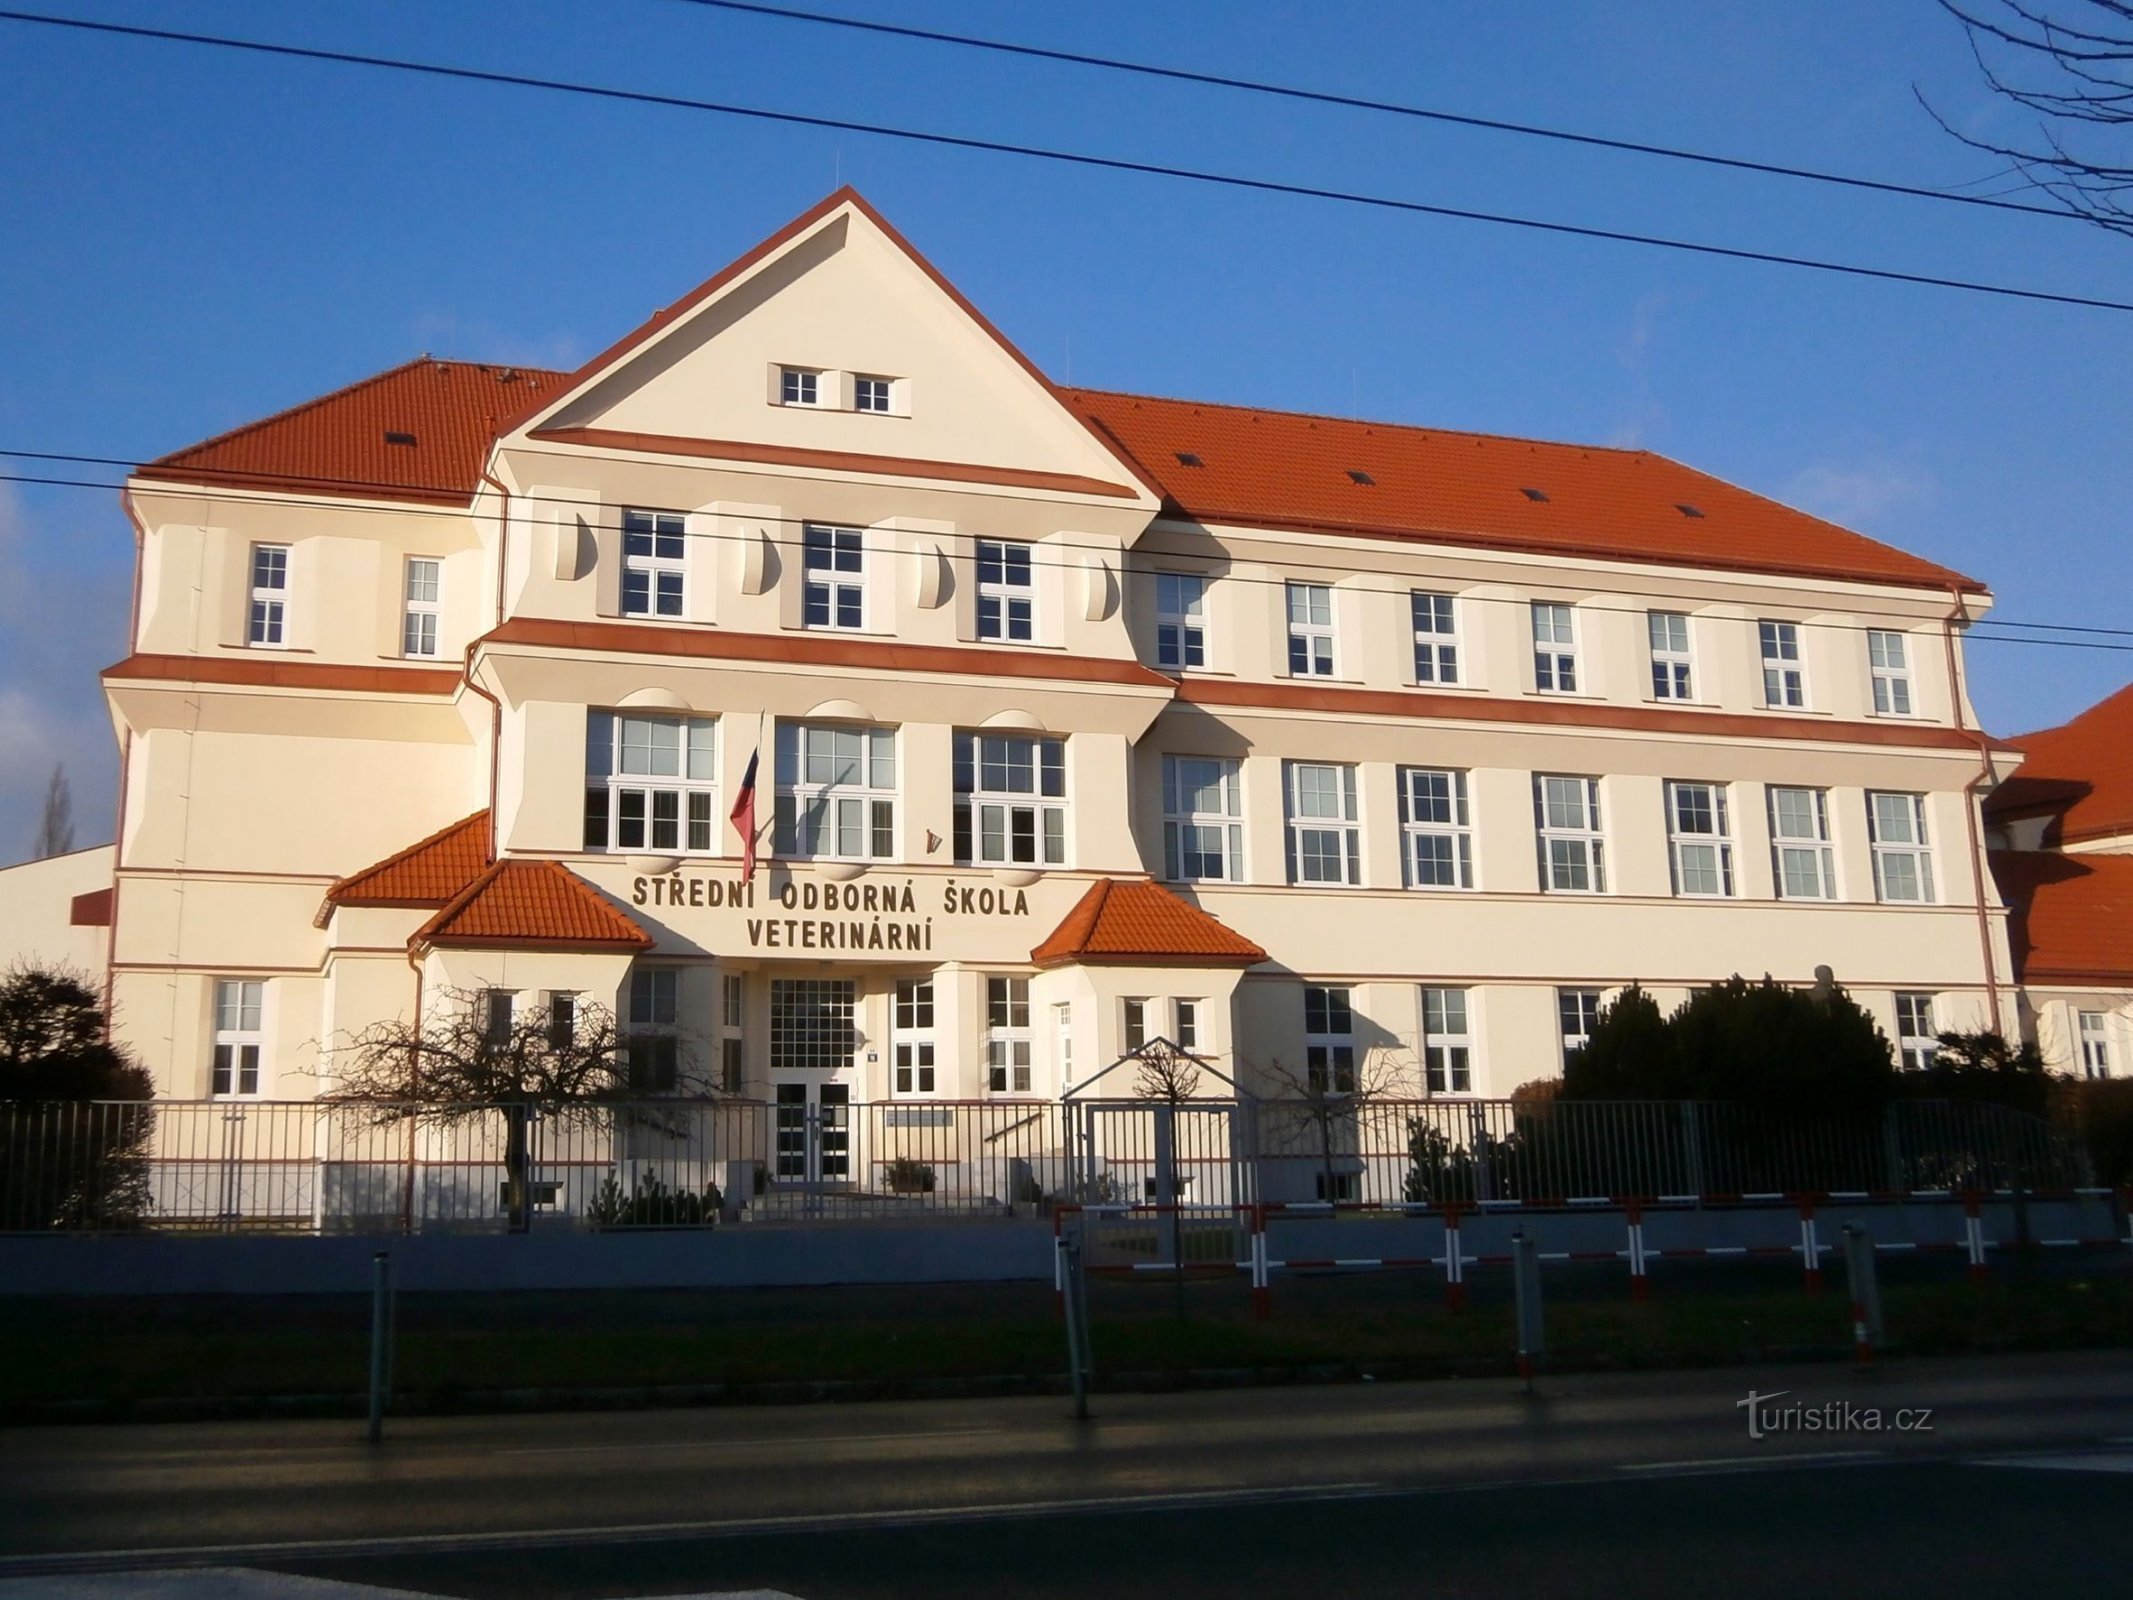 Нынешний вид здания Высшей профессиональной школы экономики в Кукленах (Градец Кралове, 4.1.2015 января XNUMX г.)